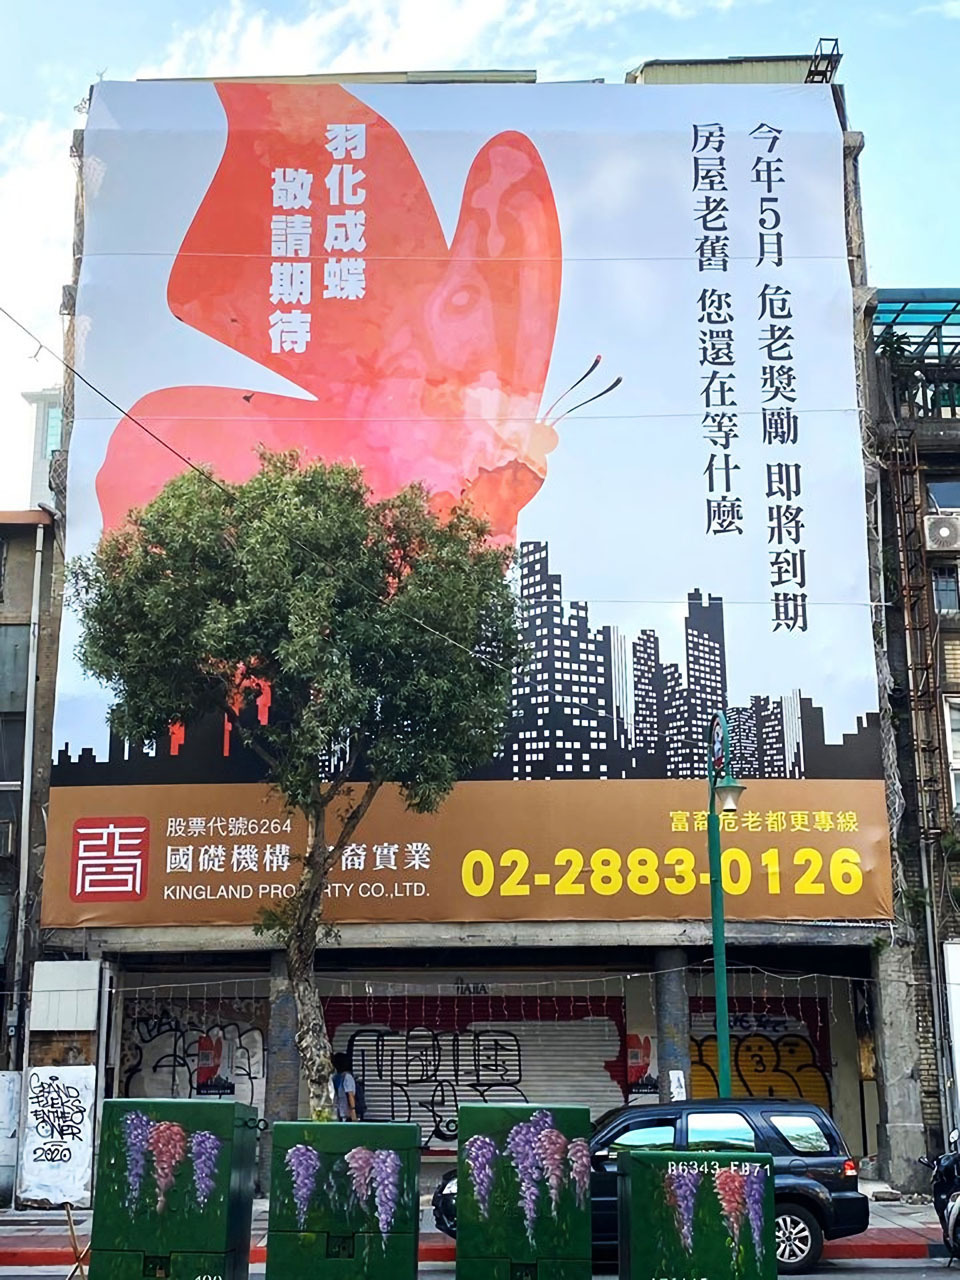 本公司於台北市大同區玉泉段一小段 981 等共計八筆土地共 31 位地主簽訂合建契約書。